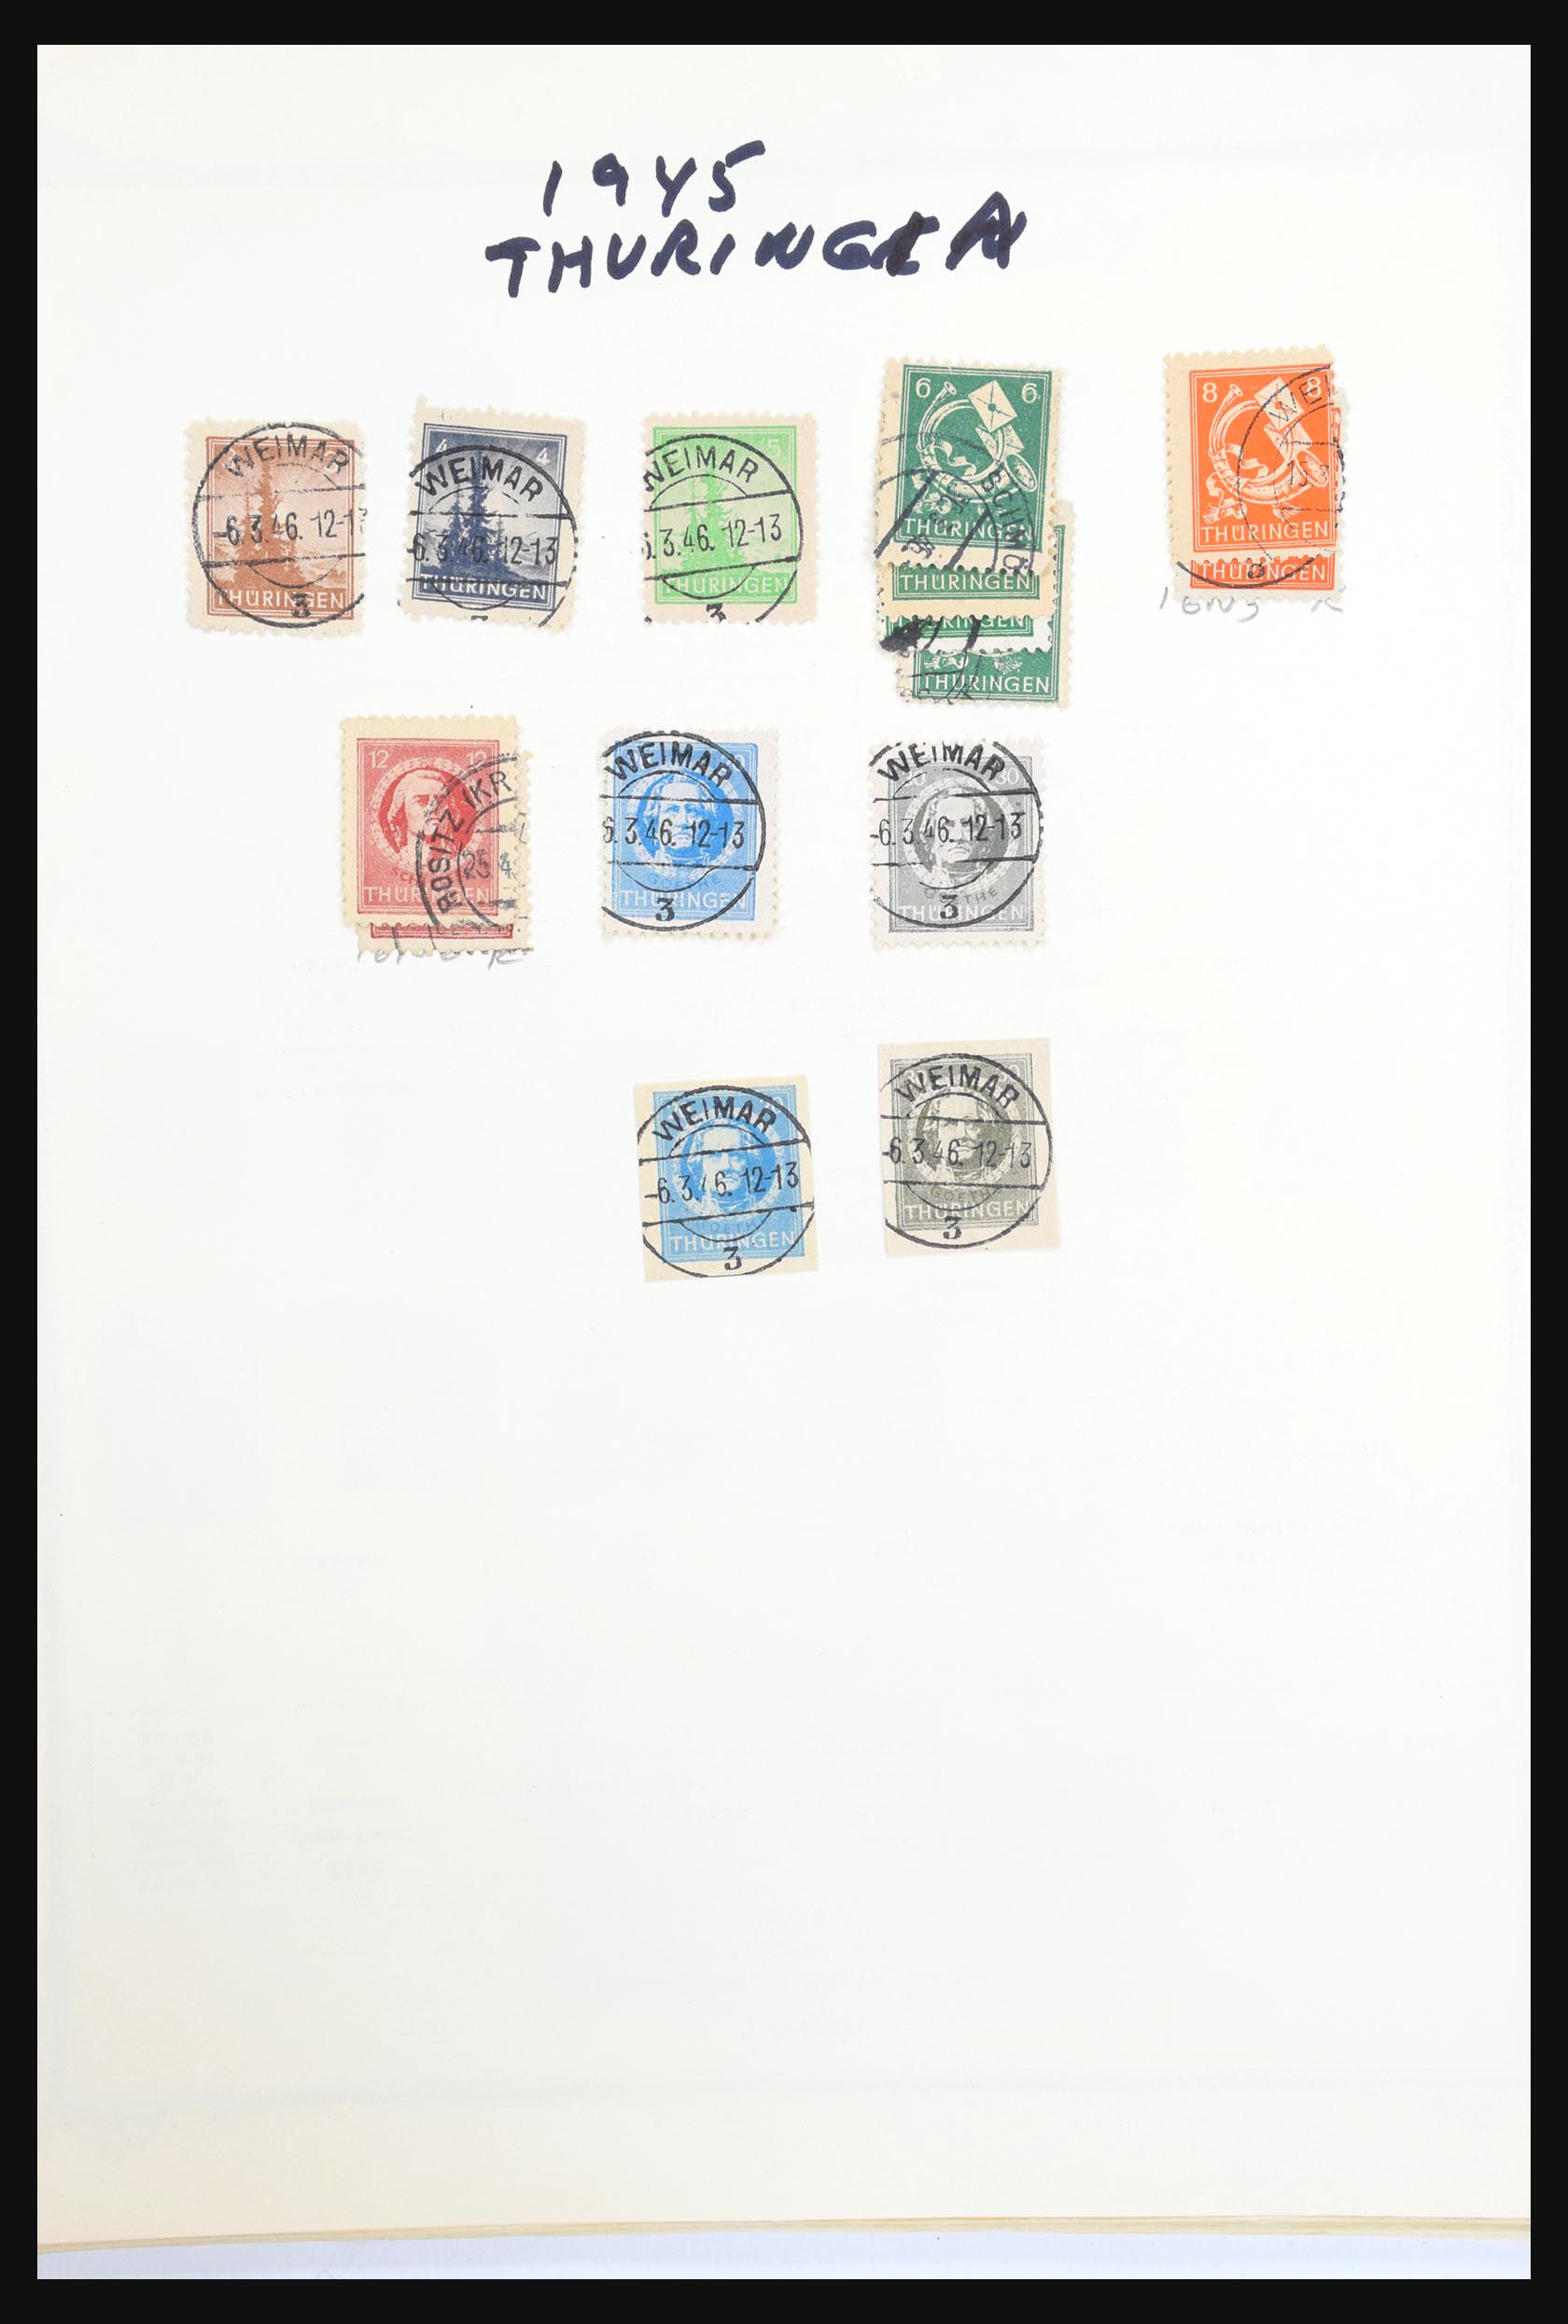 31300 427 - 31300 Duitsland superverzameling 1849-1990.